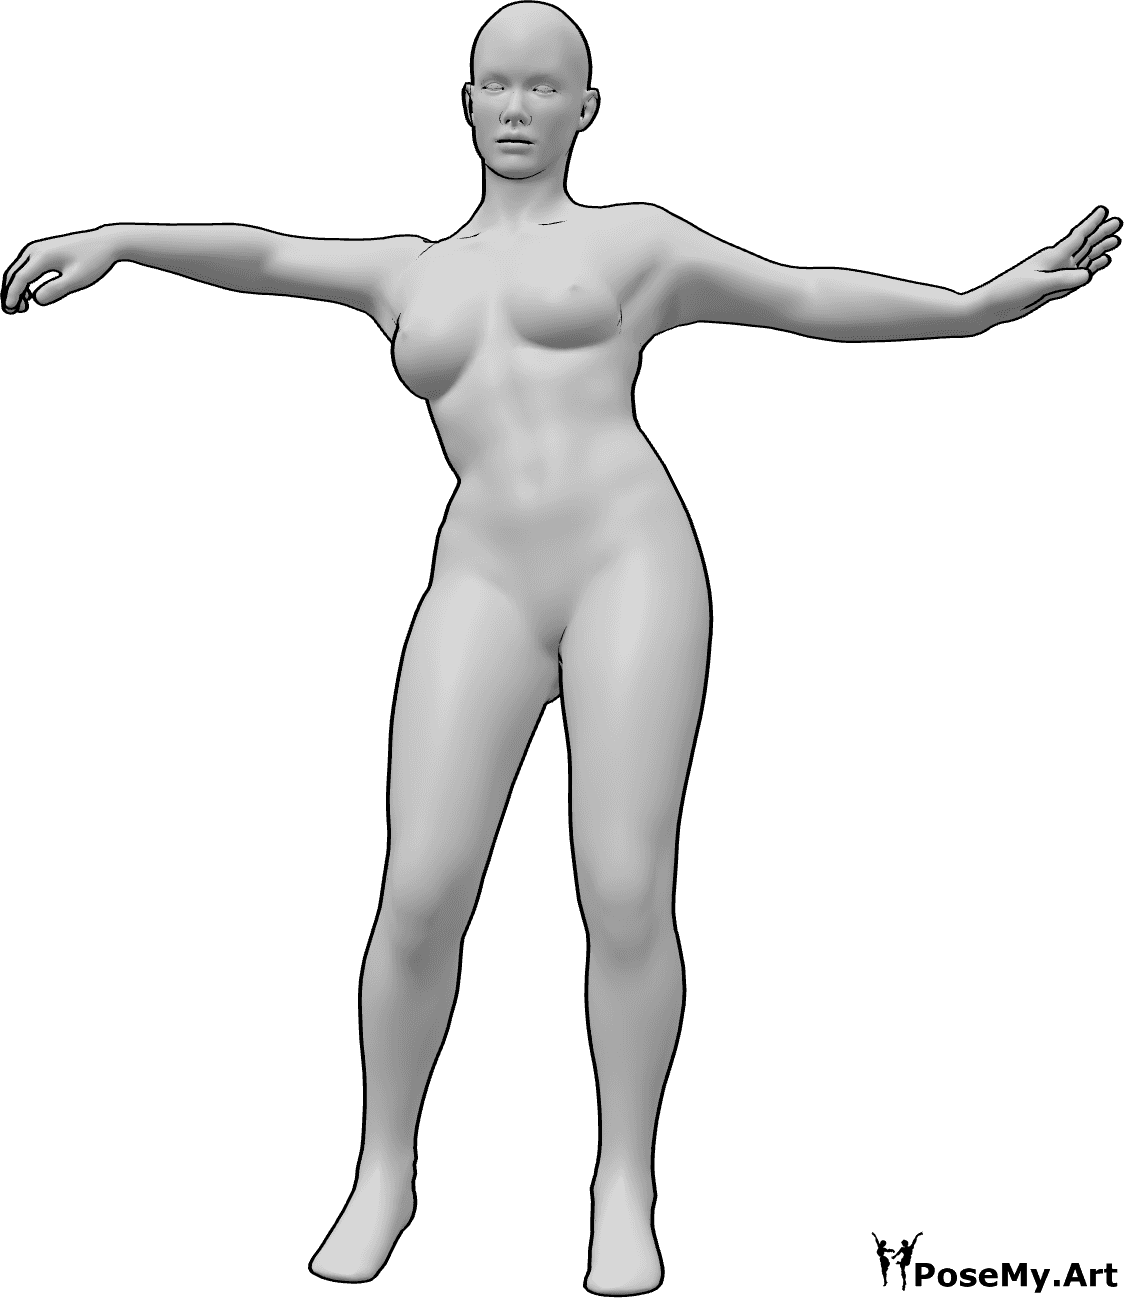 Référence des poses- Femme posant pour danser - Femme debout, dansant avec les mains et regardant vers l'avant.